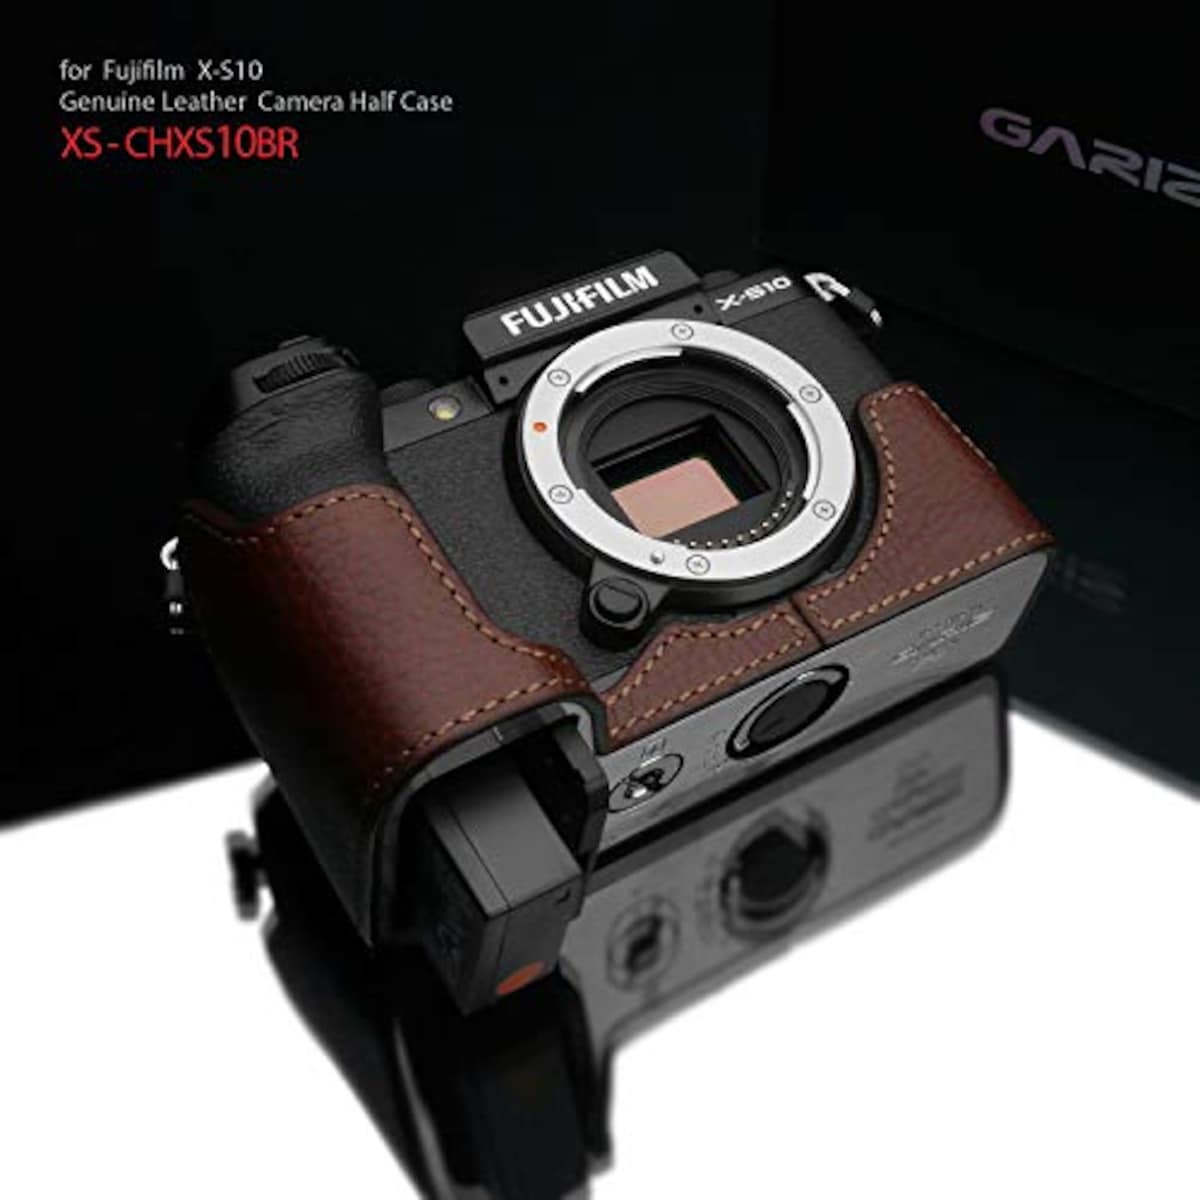  GARIZ FUJIFILM X-S10用 本革カメラケース XS-CHXS10BR ブラウン画像2 